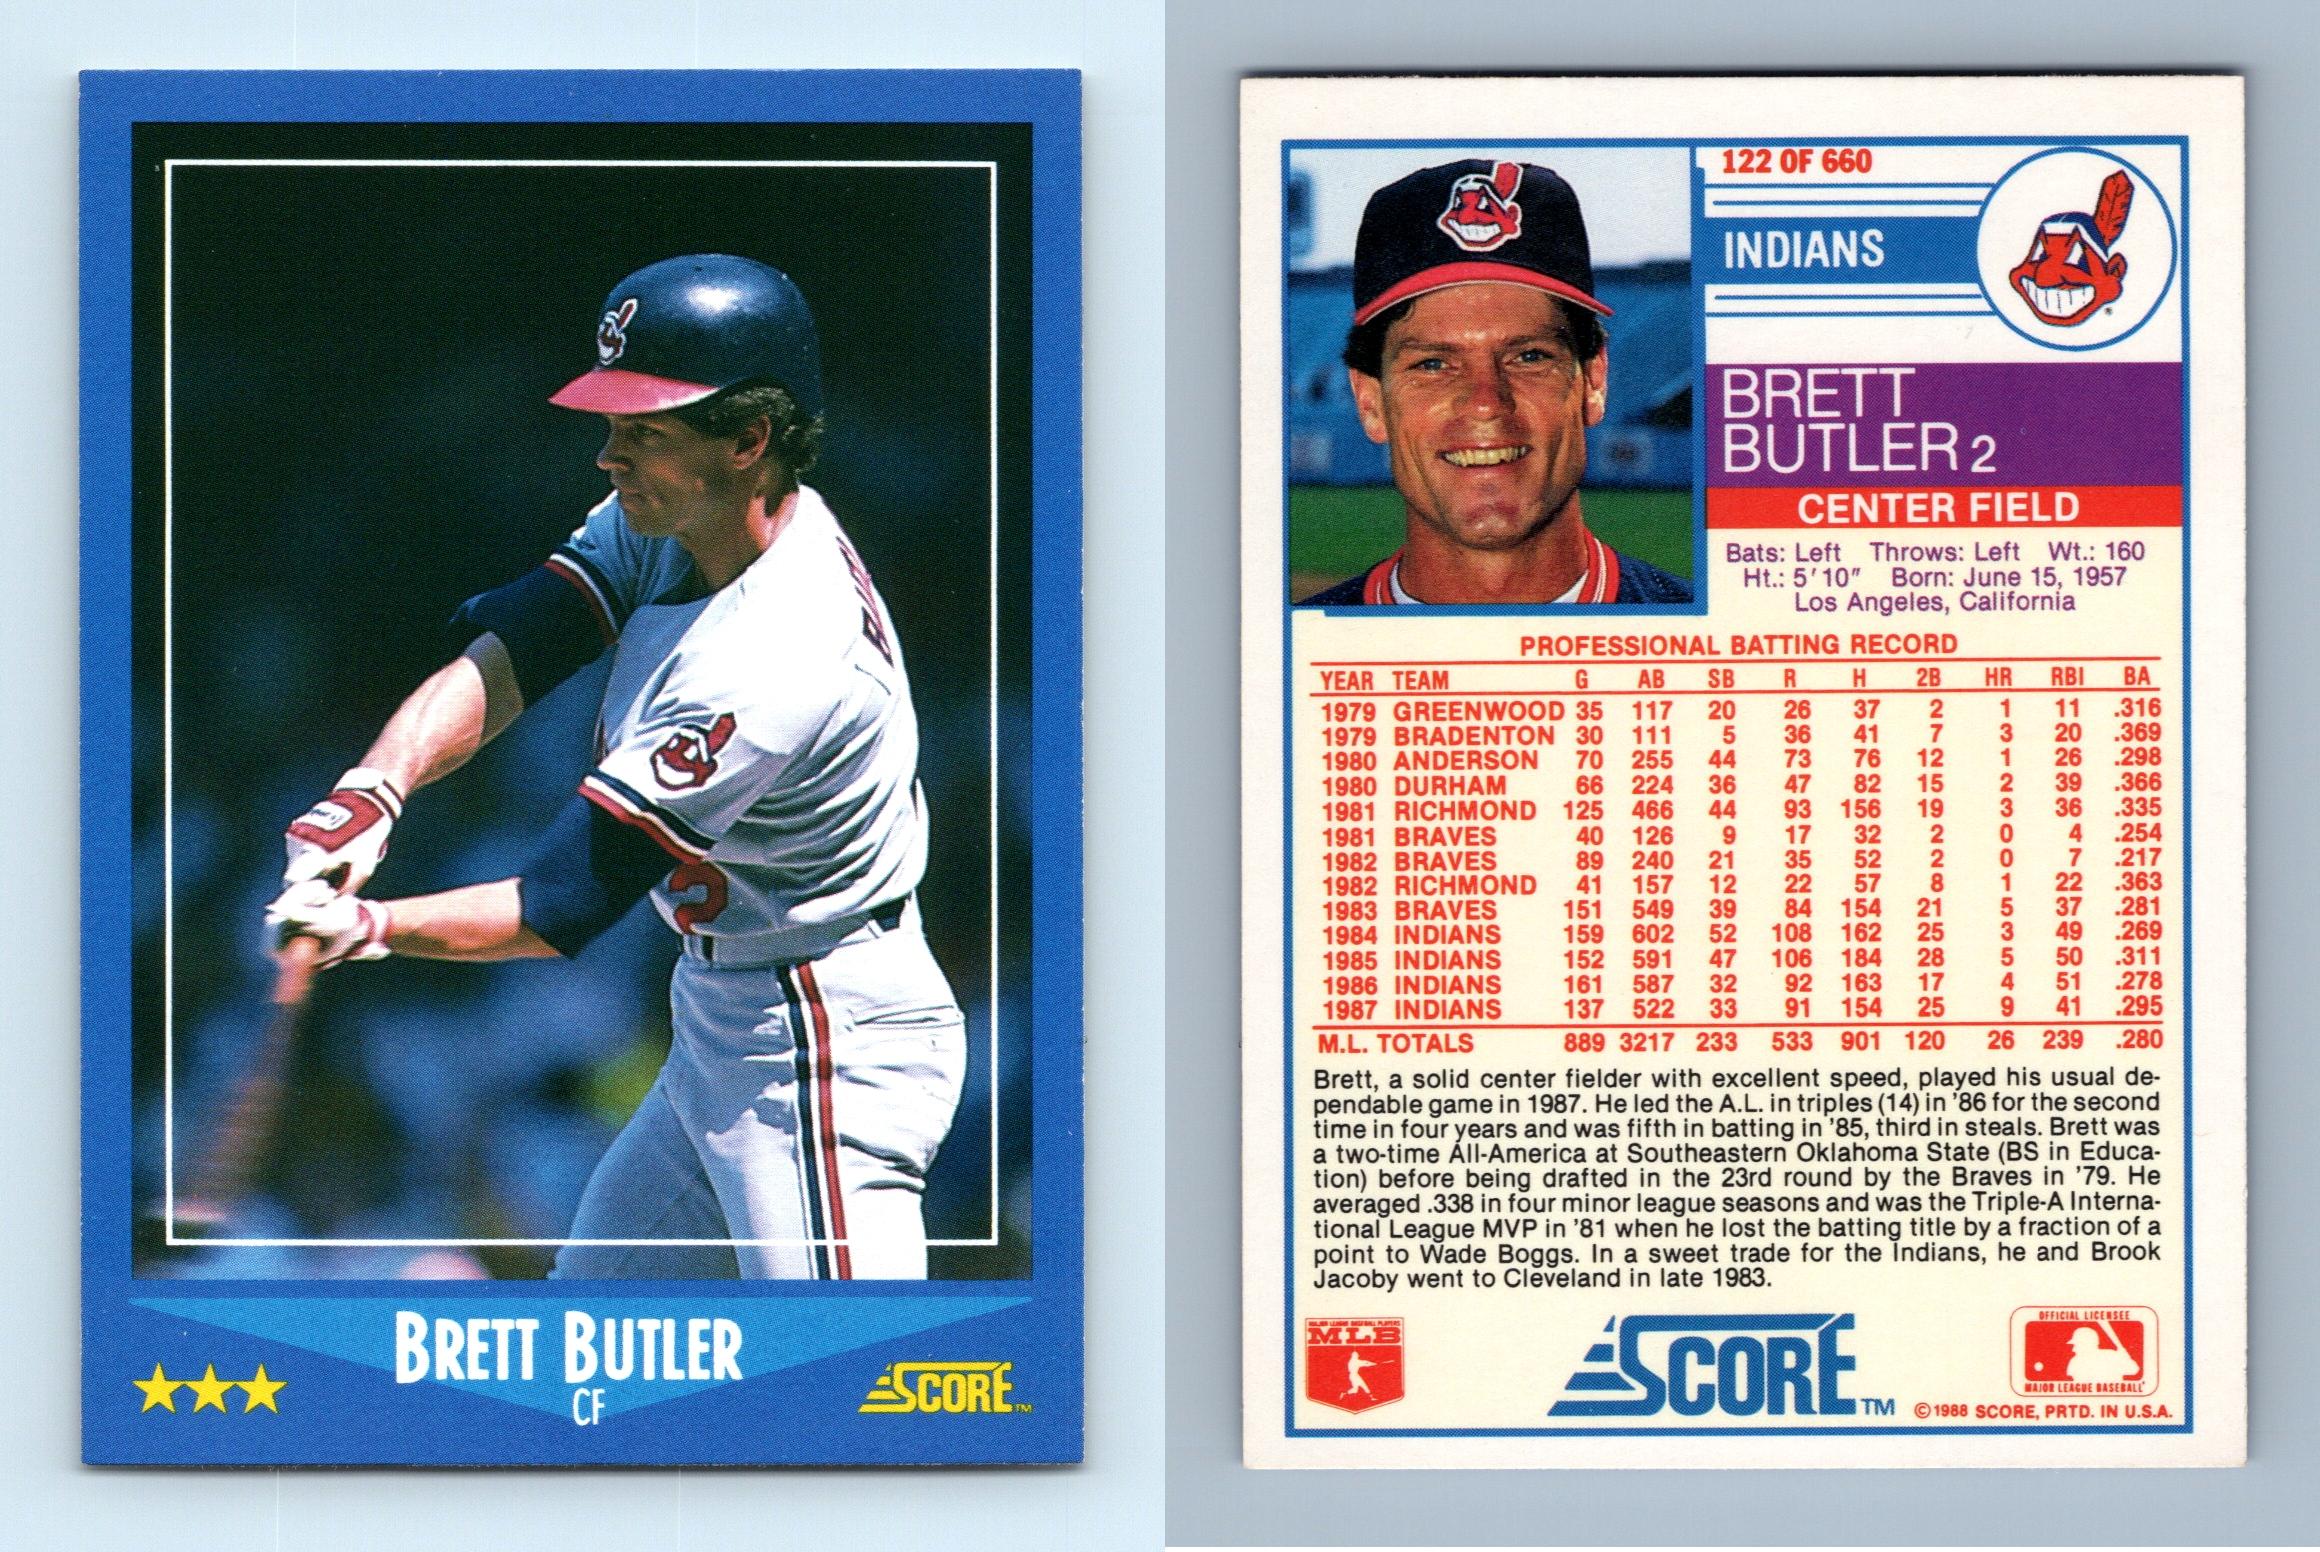 Brett Butler - Giants #216 Score 1989 Baseball Trading Card